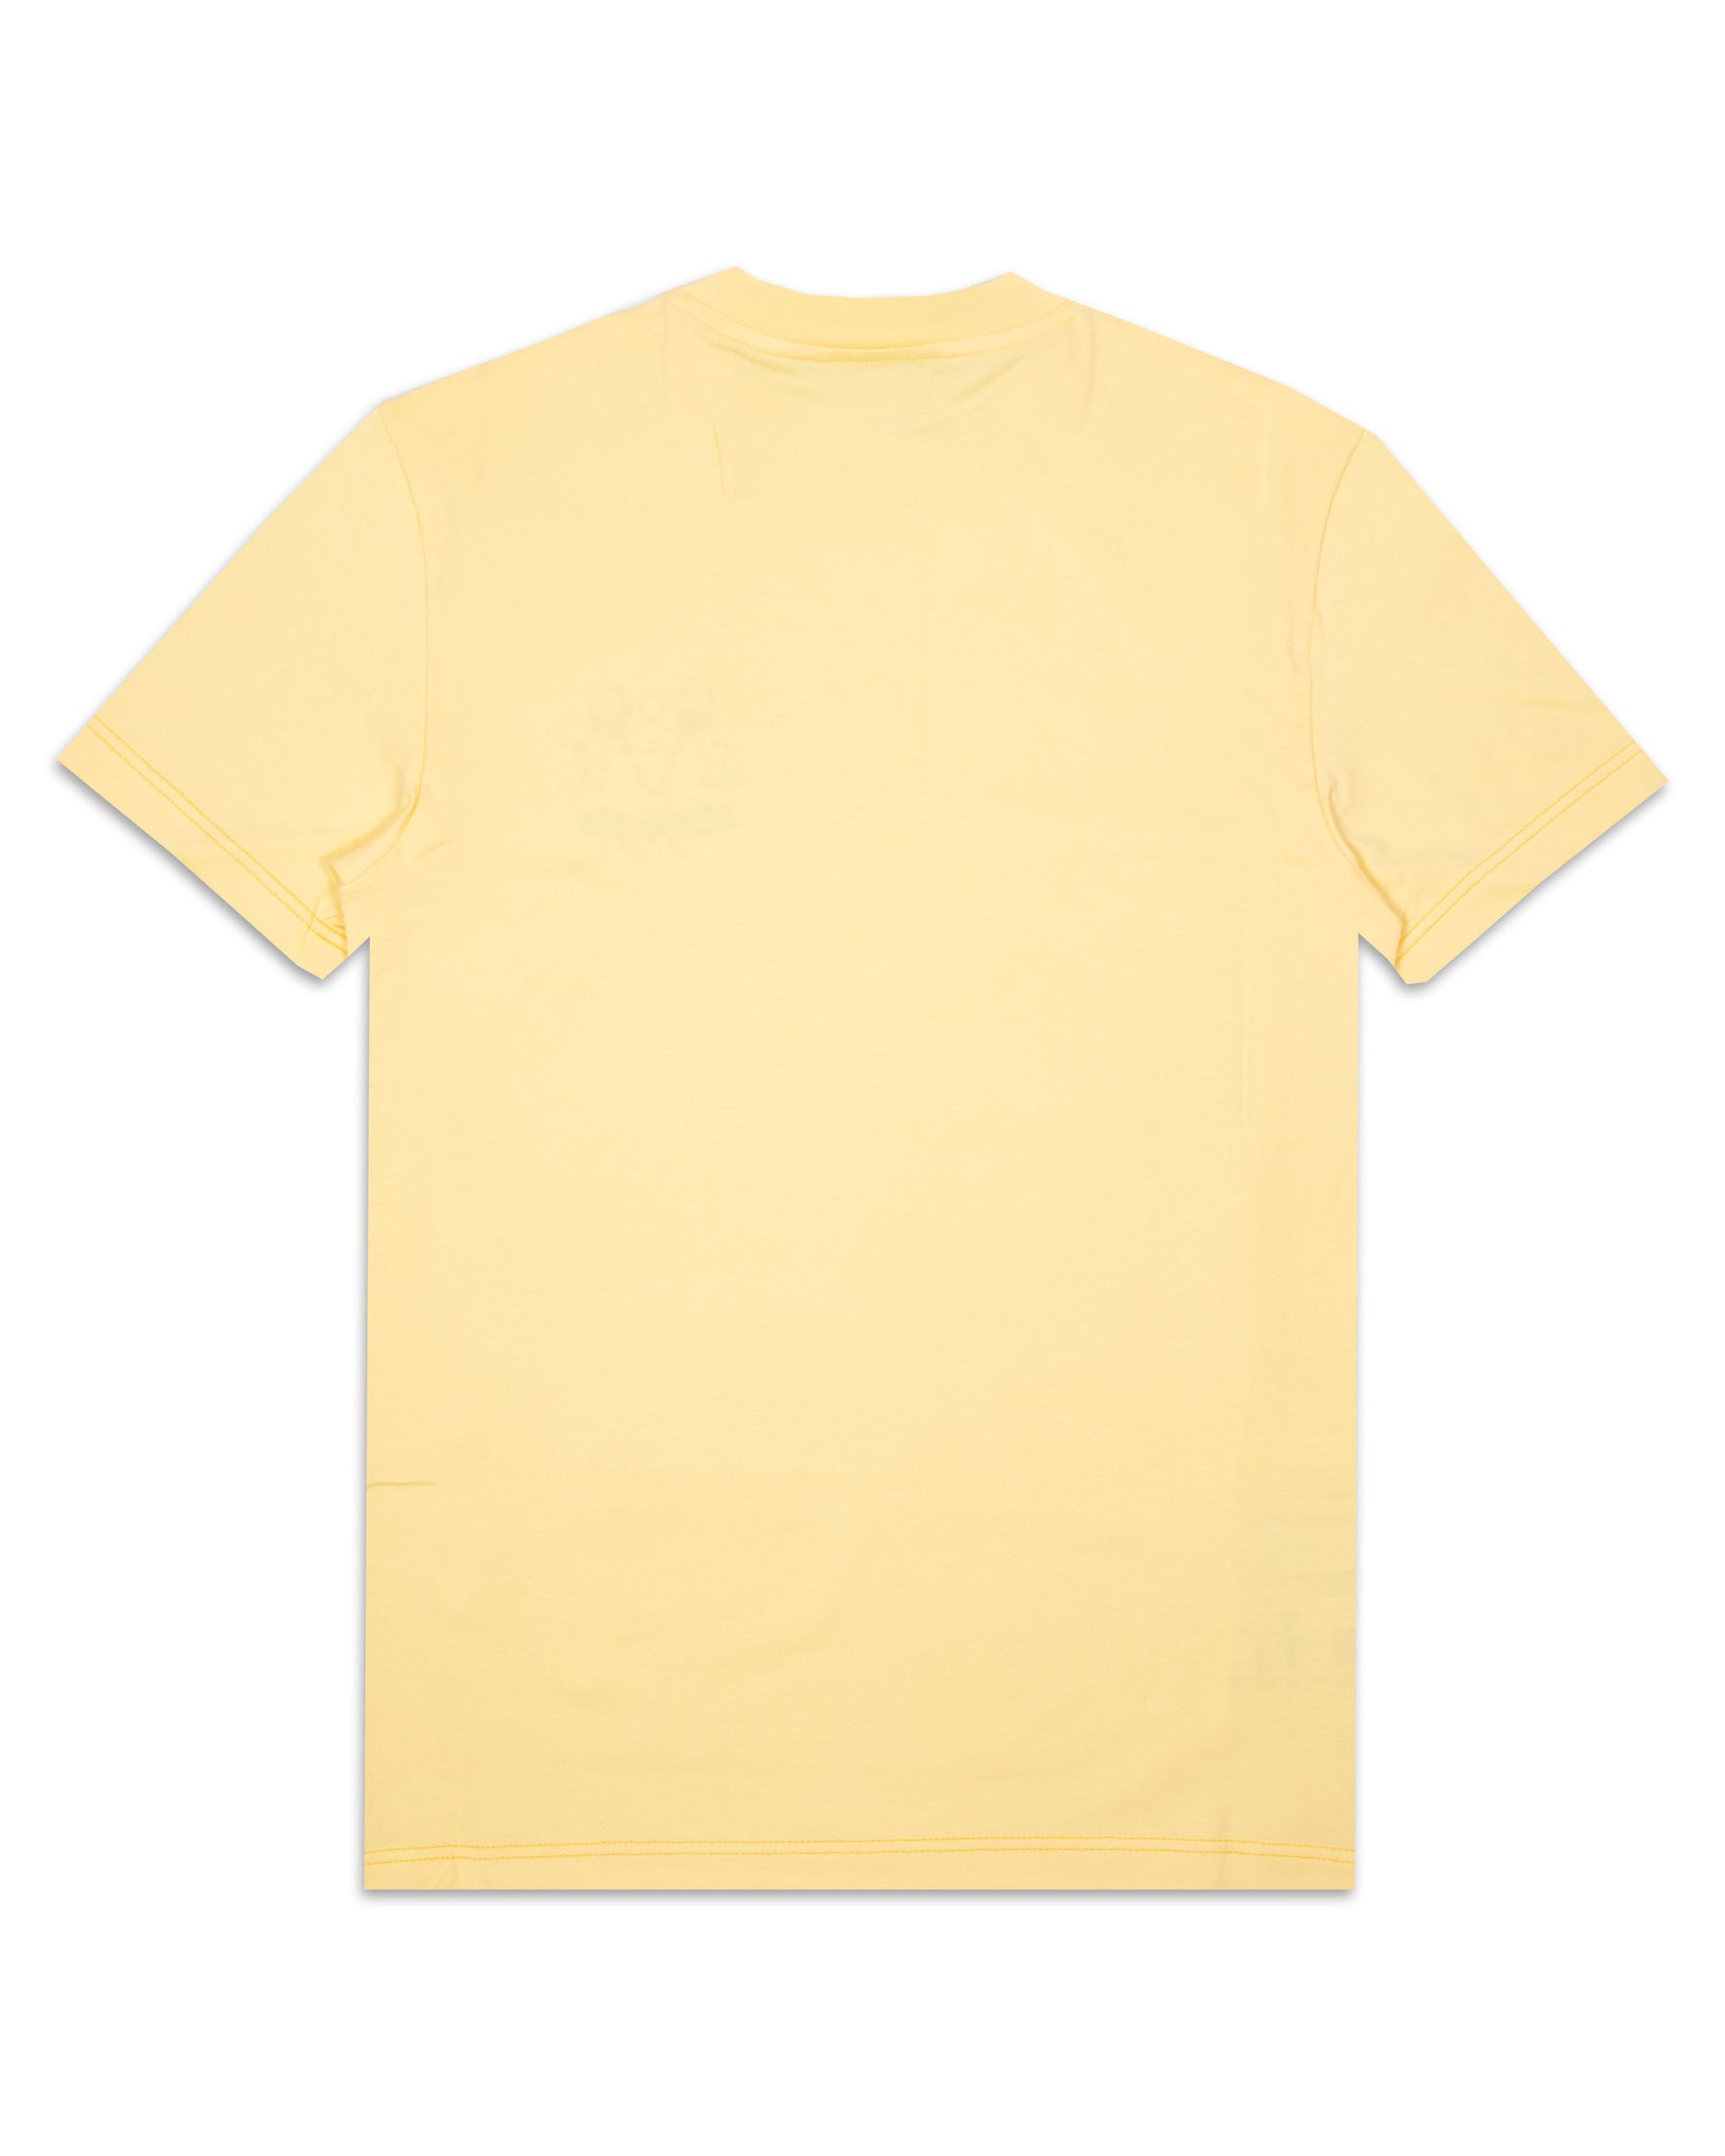 T-Shirt Uomo Lacoste Small Logo Giallo